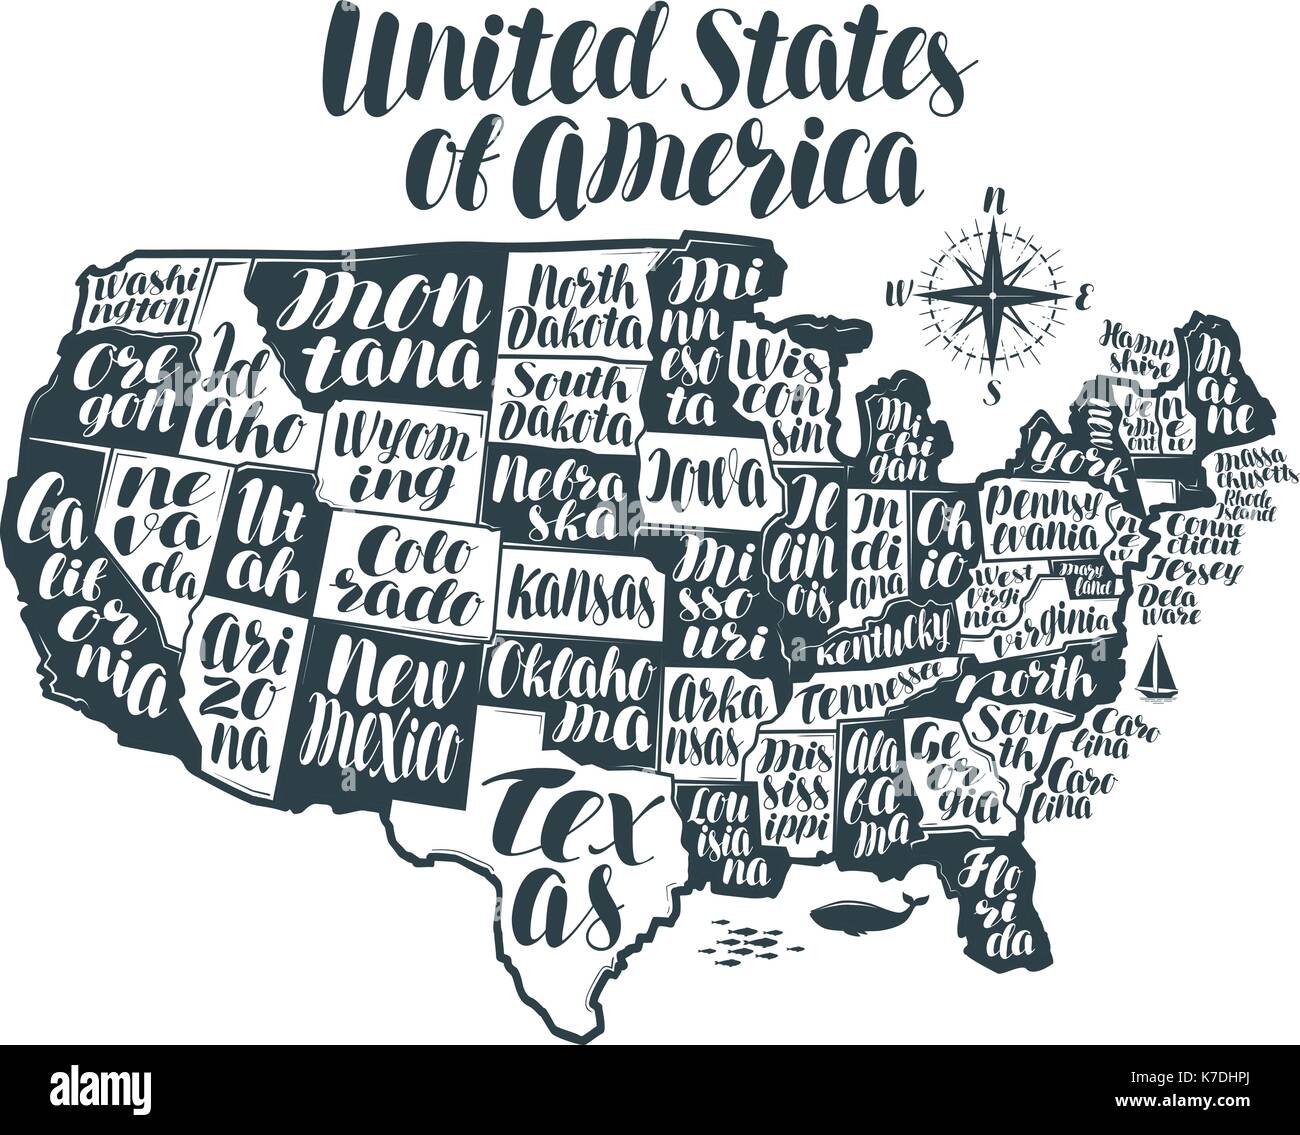 USA-Karte Land, die Vereinigten Staaten von Amerika. Schriftzug, typografische Gestaltung Vector Illustration Stock Vektor